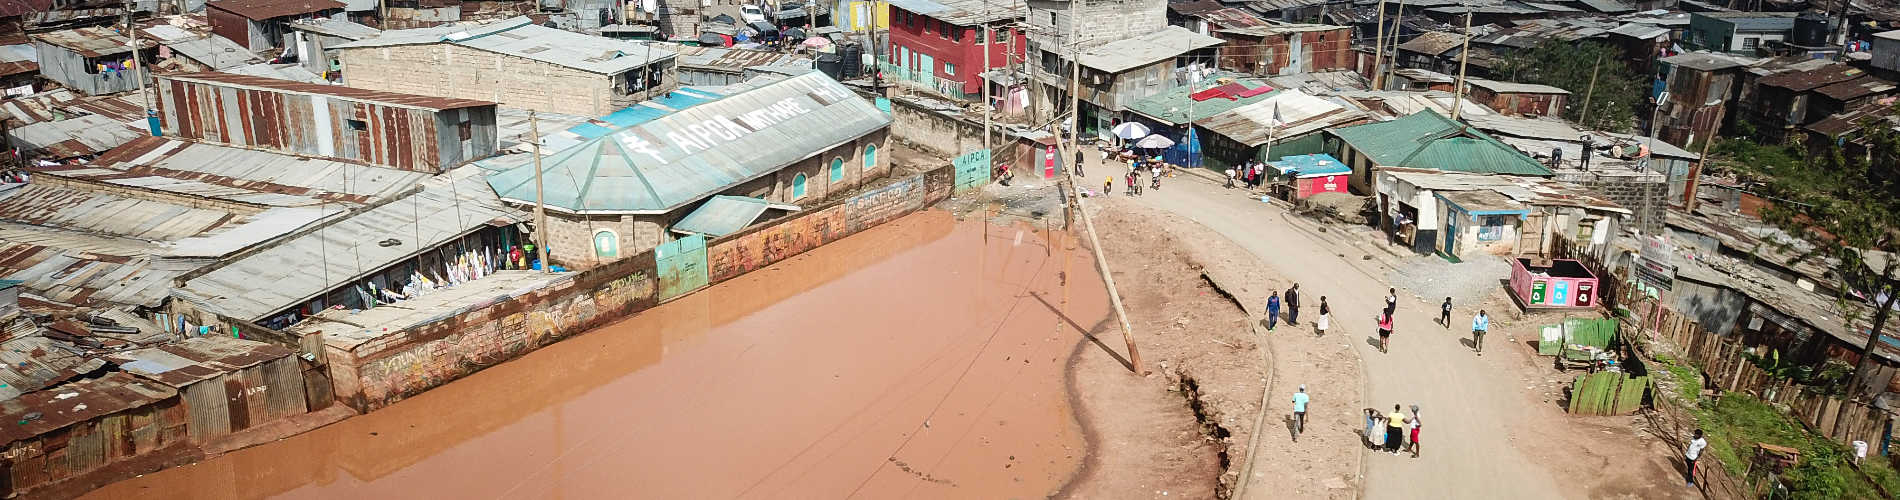 肯尼亚洪水等灾害已致179人死亡